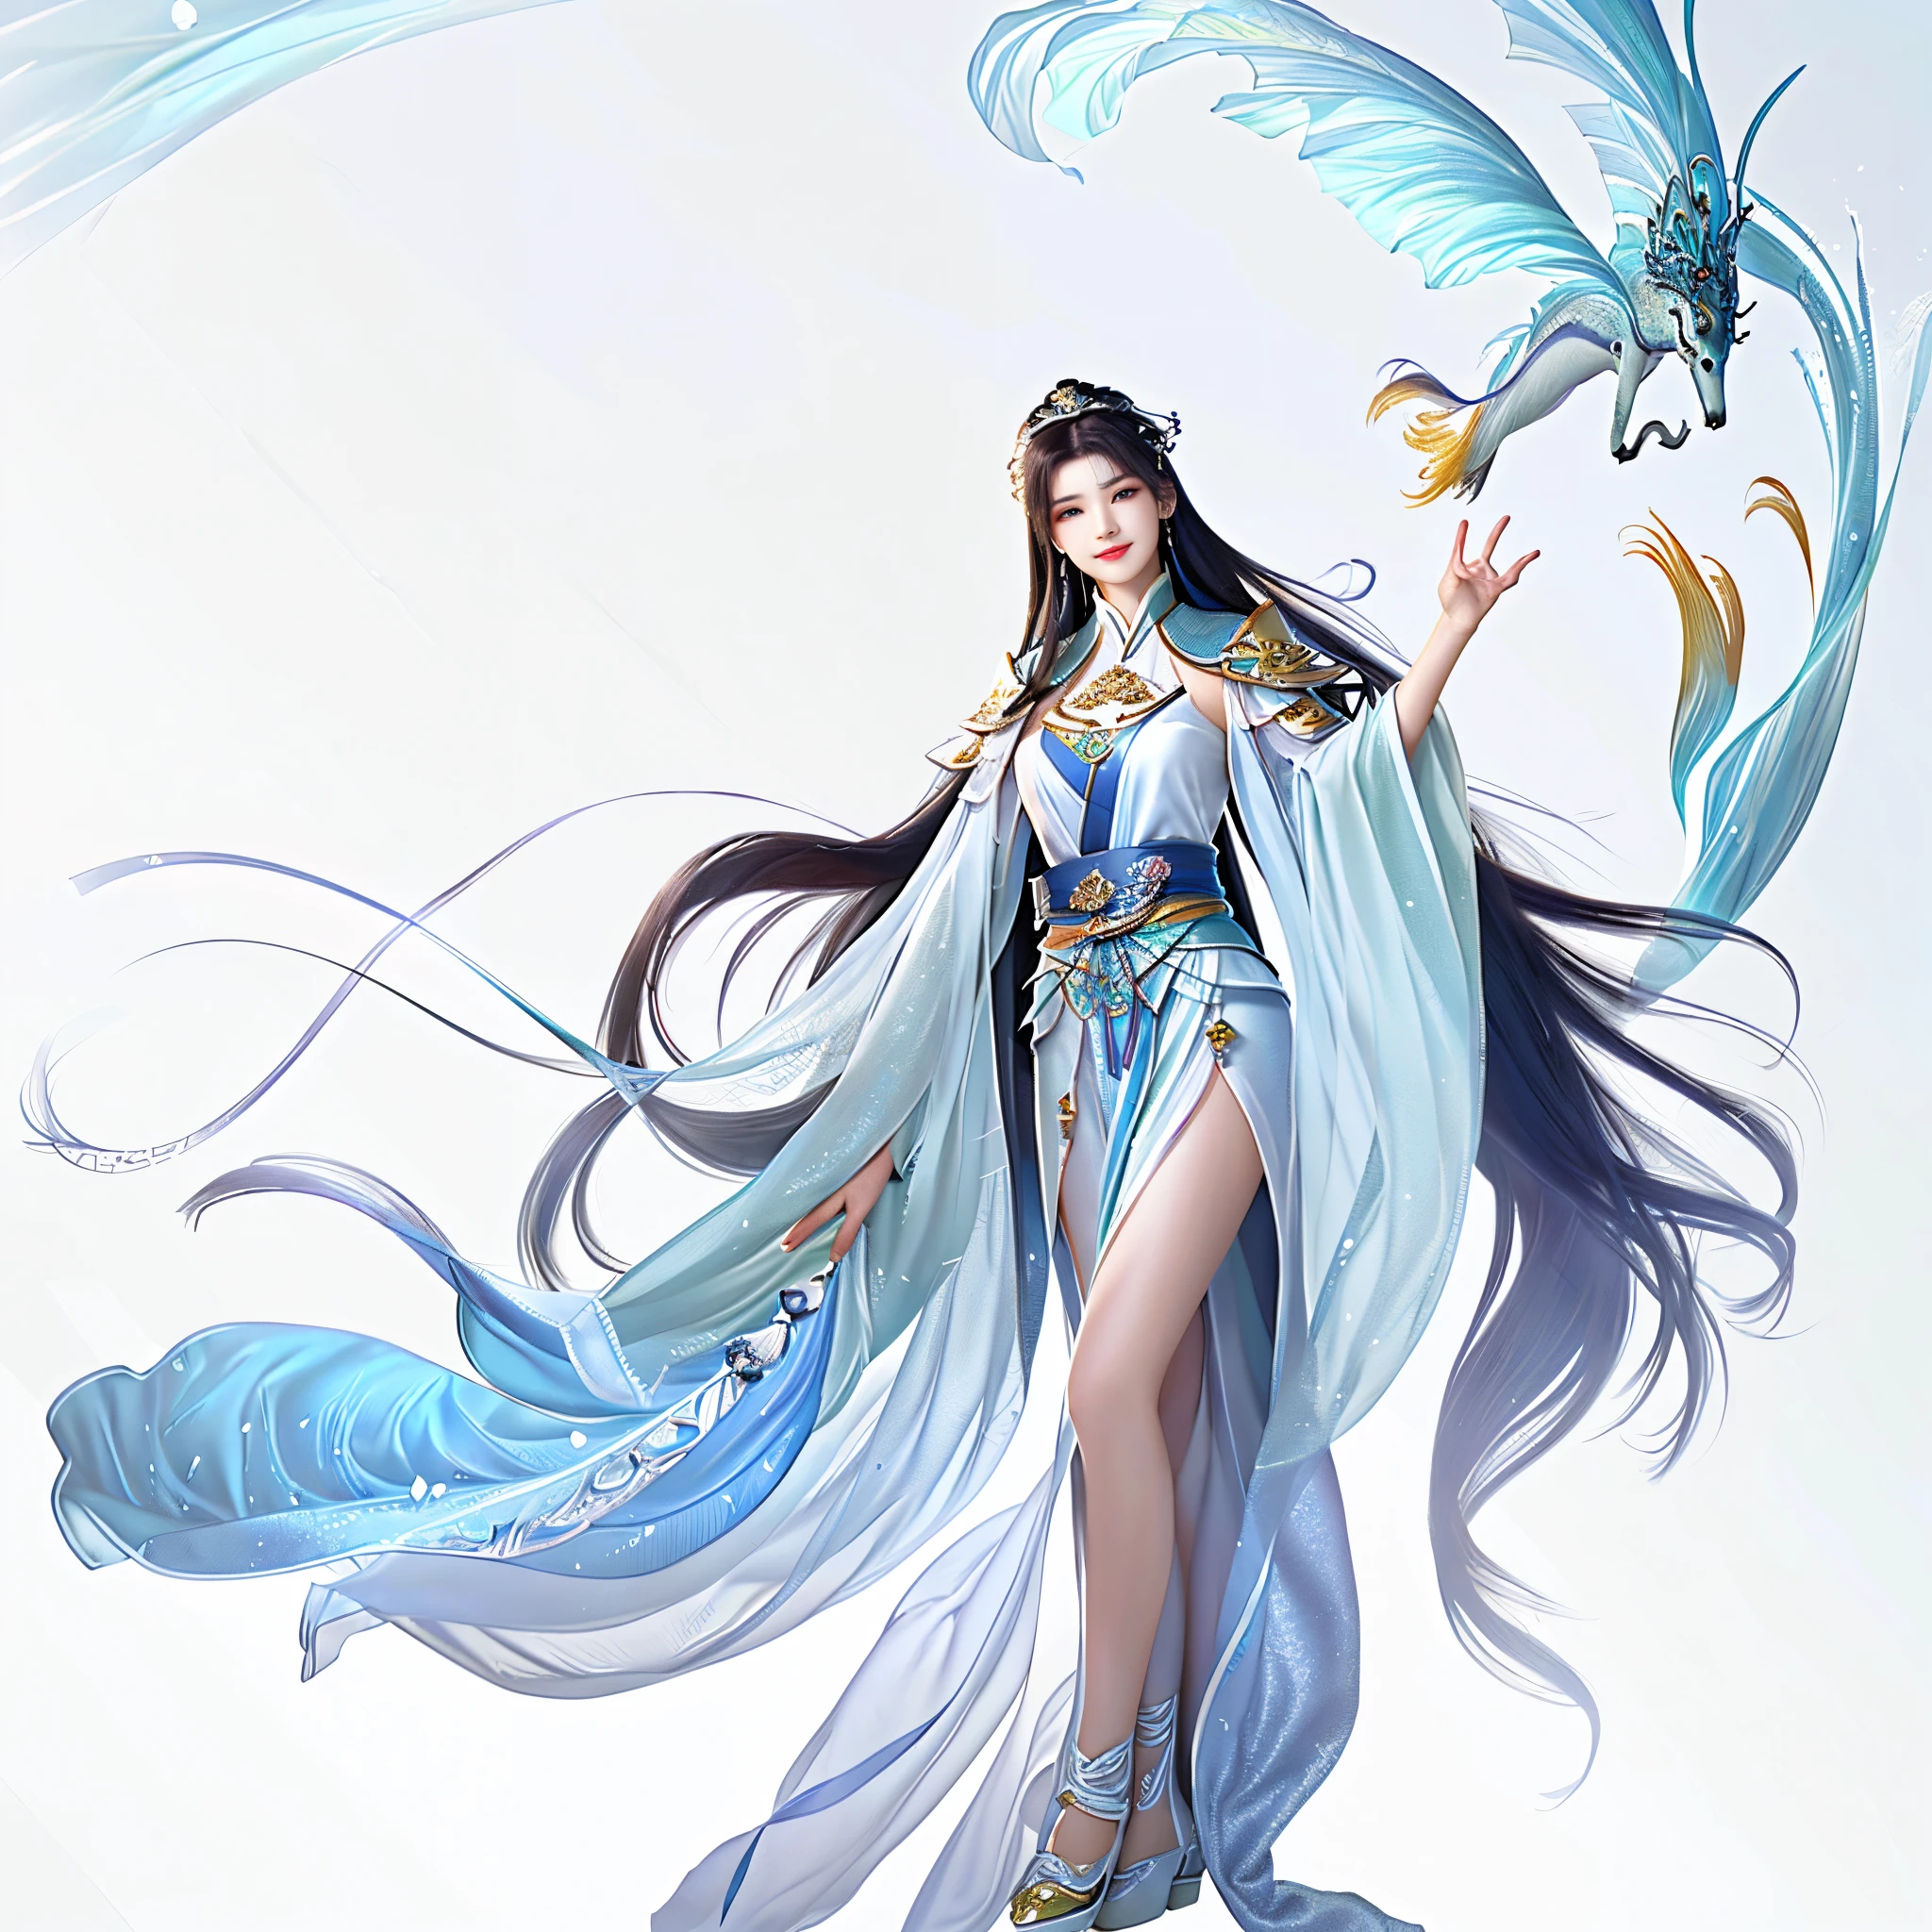 여자는 멀리서 시계를 본다,  웃고있는,중국 고대 신, 시안샤, 서 있는! 전신, 아름다운 환상의 황후, 아름다운 천상의 마법사, 긴 검은 머리, 바다의 여왕 무옌링, 천상의 정수, ((아름다운 환상의 황후)), 애니메이션 여신, 아름다운 청춘 정신, g liulian 아트 스타일, 흐르는 마법의 로브， 책상 위에,최고의 품질 최고의,울트라-디테일,고해상도,고해상도,4K,4K 초상화,8K,8K 인물 사진,유니티 8K 벽지,매우 상세한 CG,실제,RAW 사진작가,실제 인간,인물 사진,현실적으로,윤기나는 윤기나는 피부,민감한 피부,